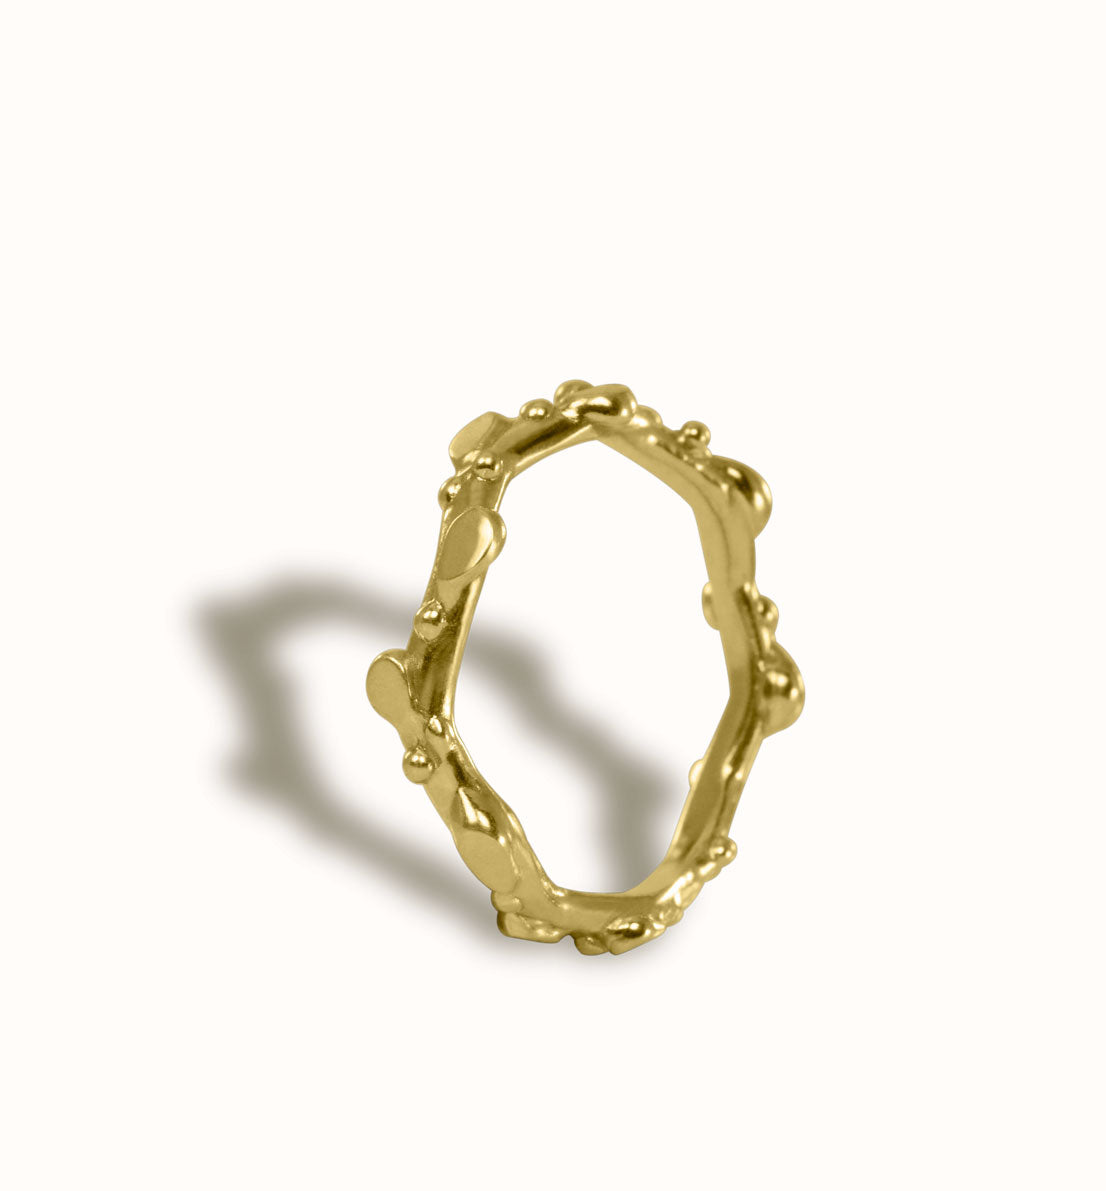 Une bague fine en bronze. Un anneau et des feuilles comme une tige végétale. Une pièce unique, les bijoux Histoire Botanique sont fabriqués par un artisan créateur français.